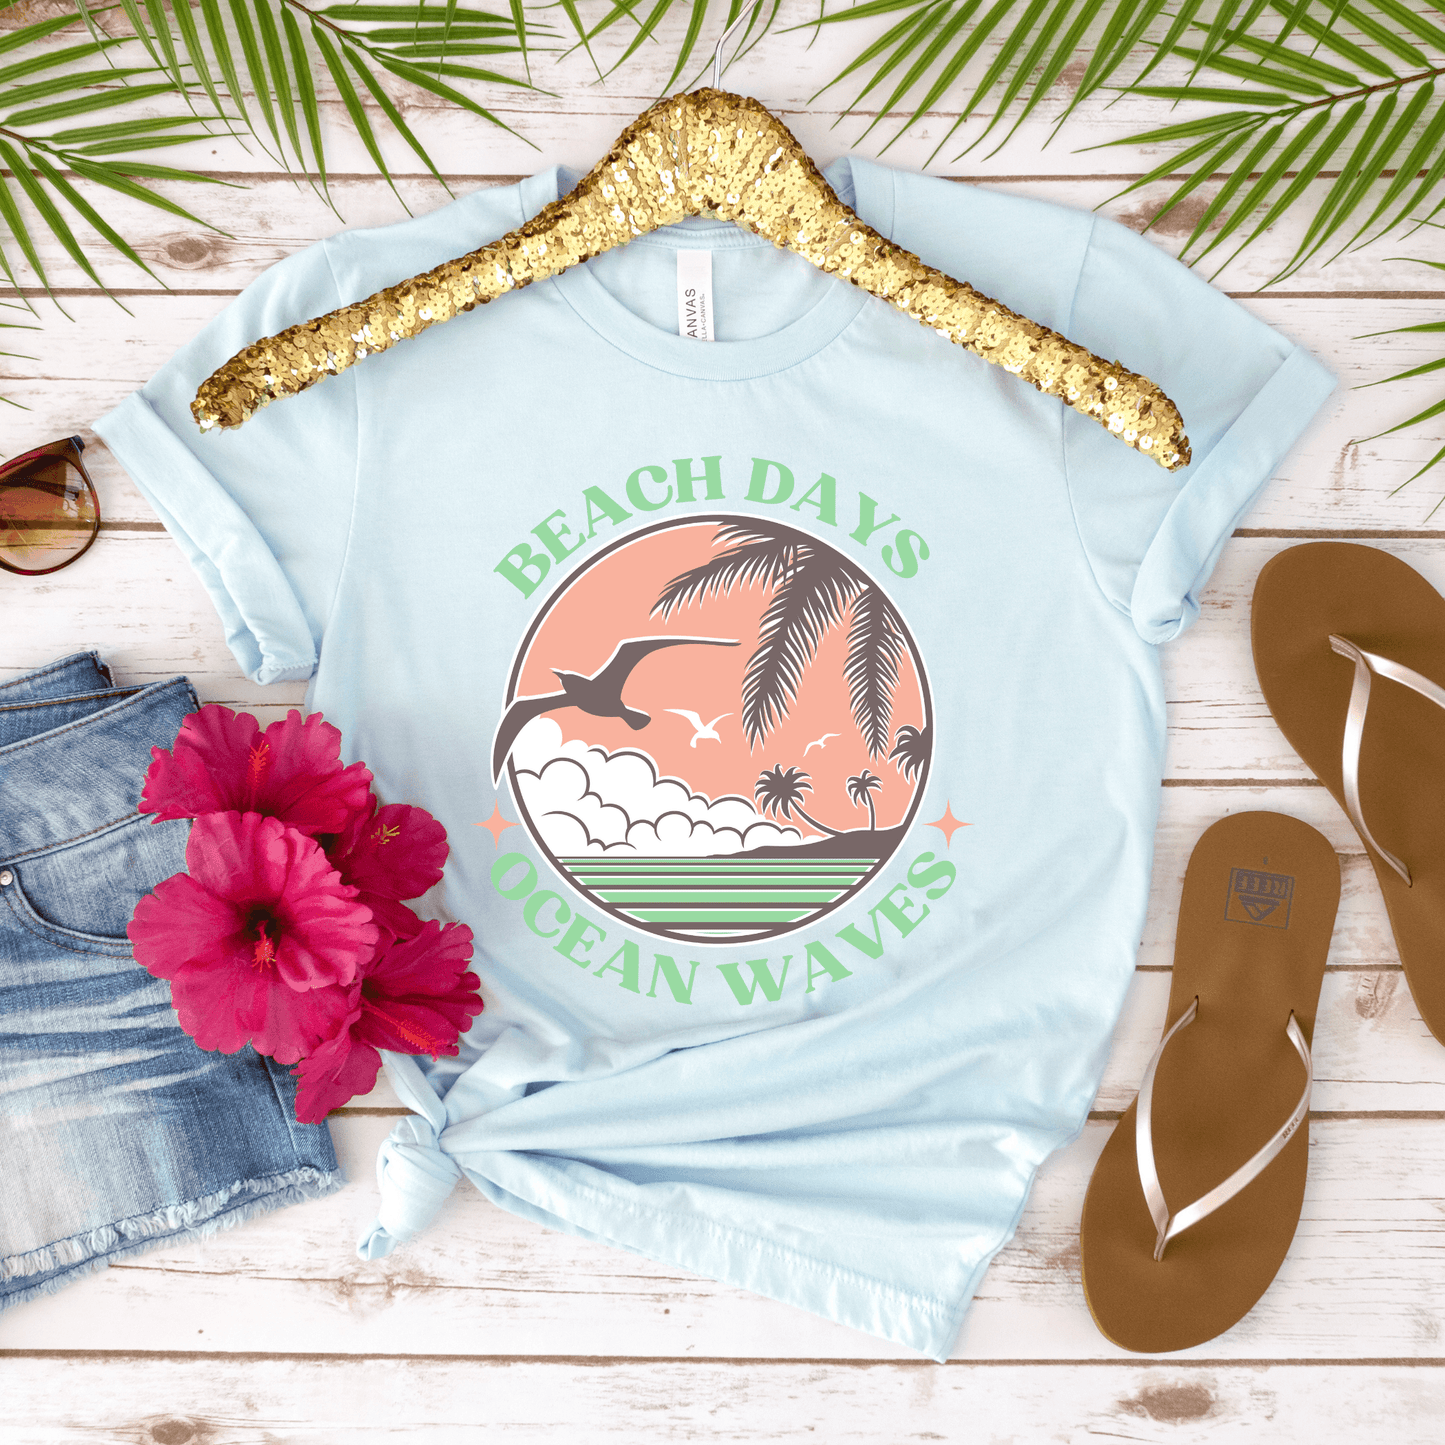 Beach Days Ocean Waves Beachy Softstyle T-Shirt - Basically Beachy